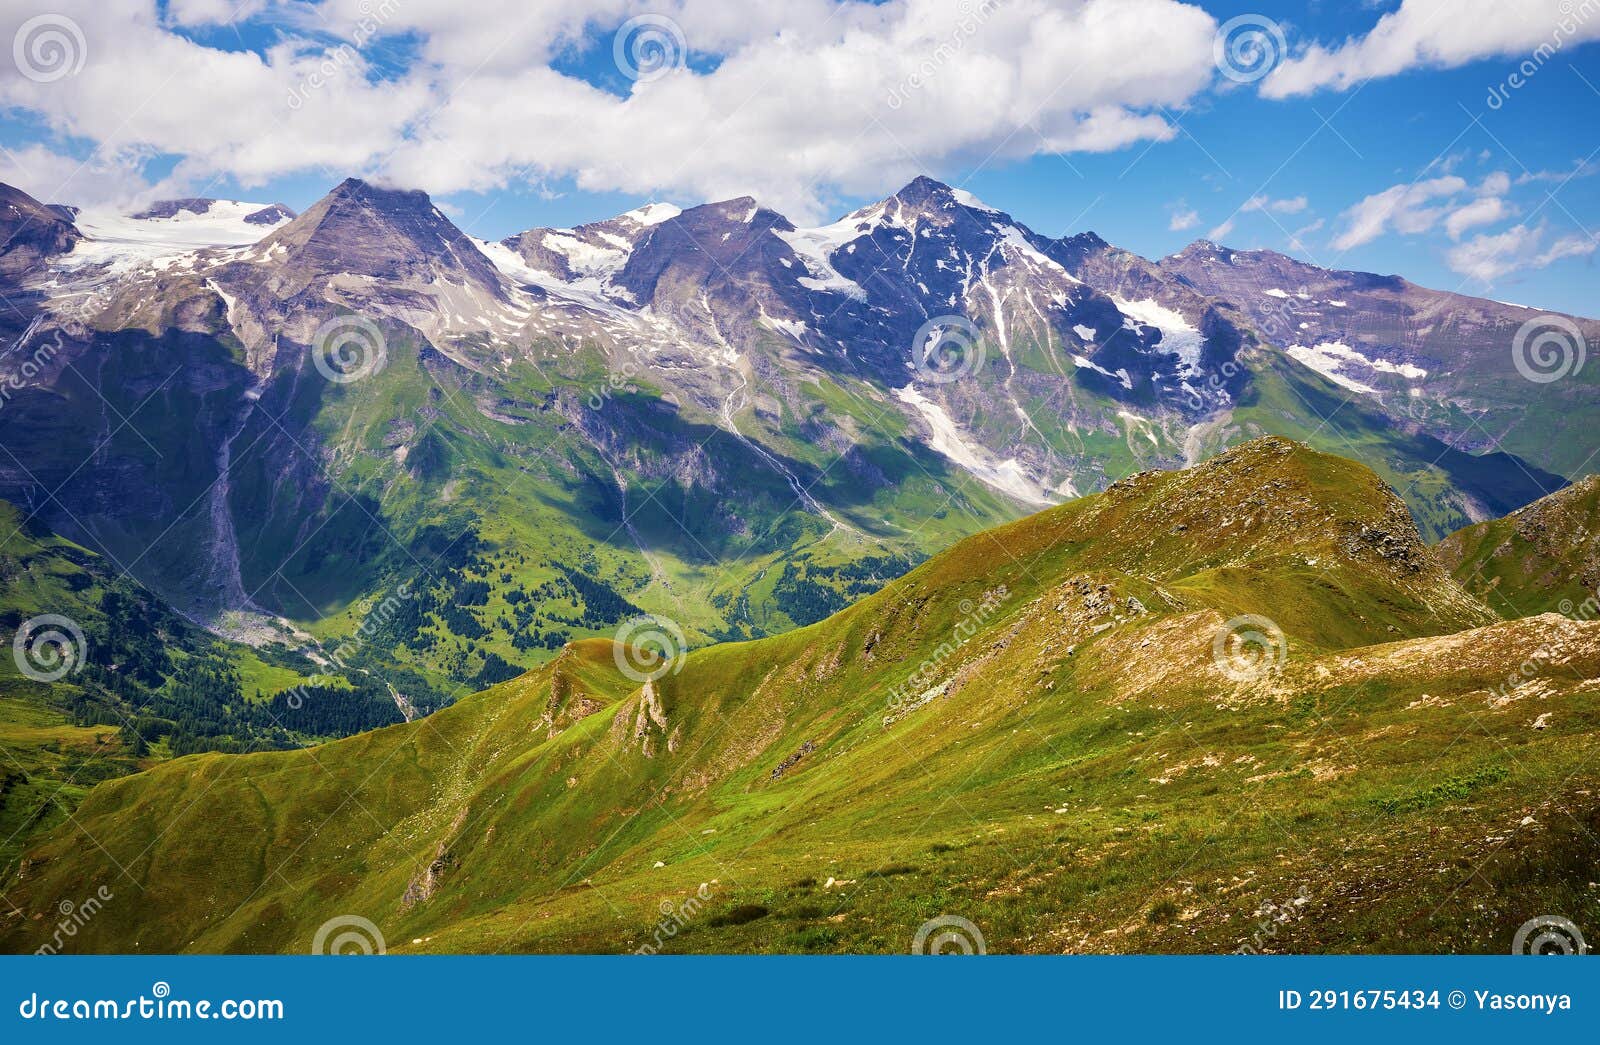 grossglockner austria. snowbound summits of alps mountains